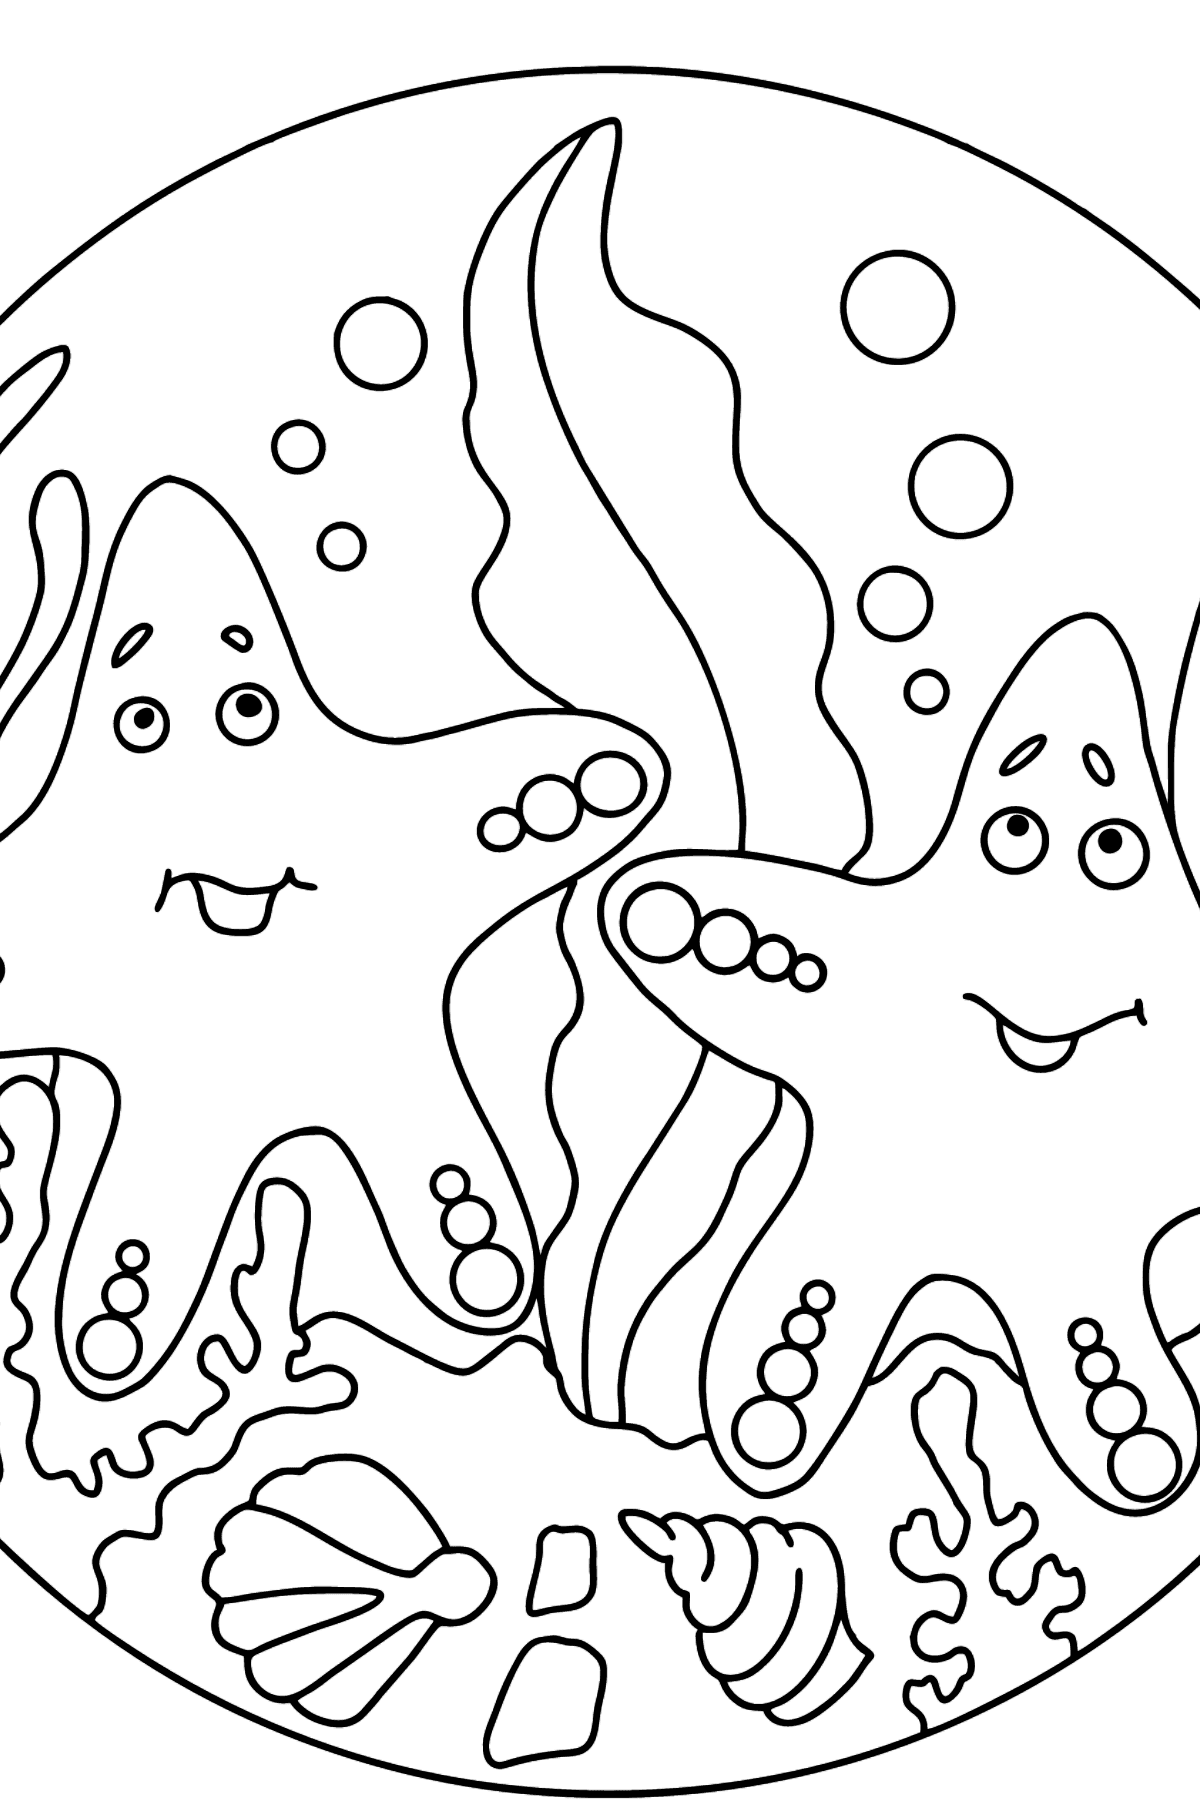 Раскраска Две морские звезды (сложная) - Картинки для Детей